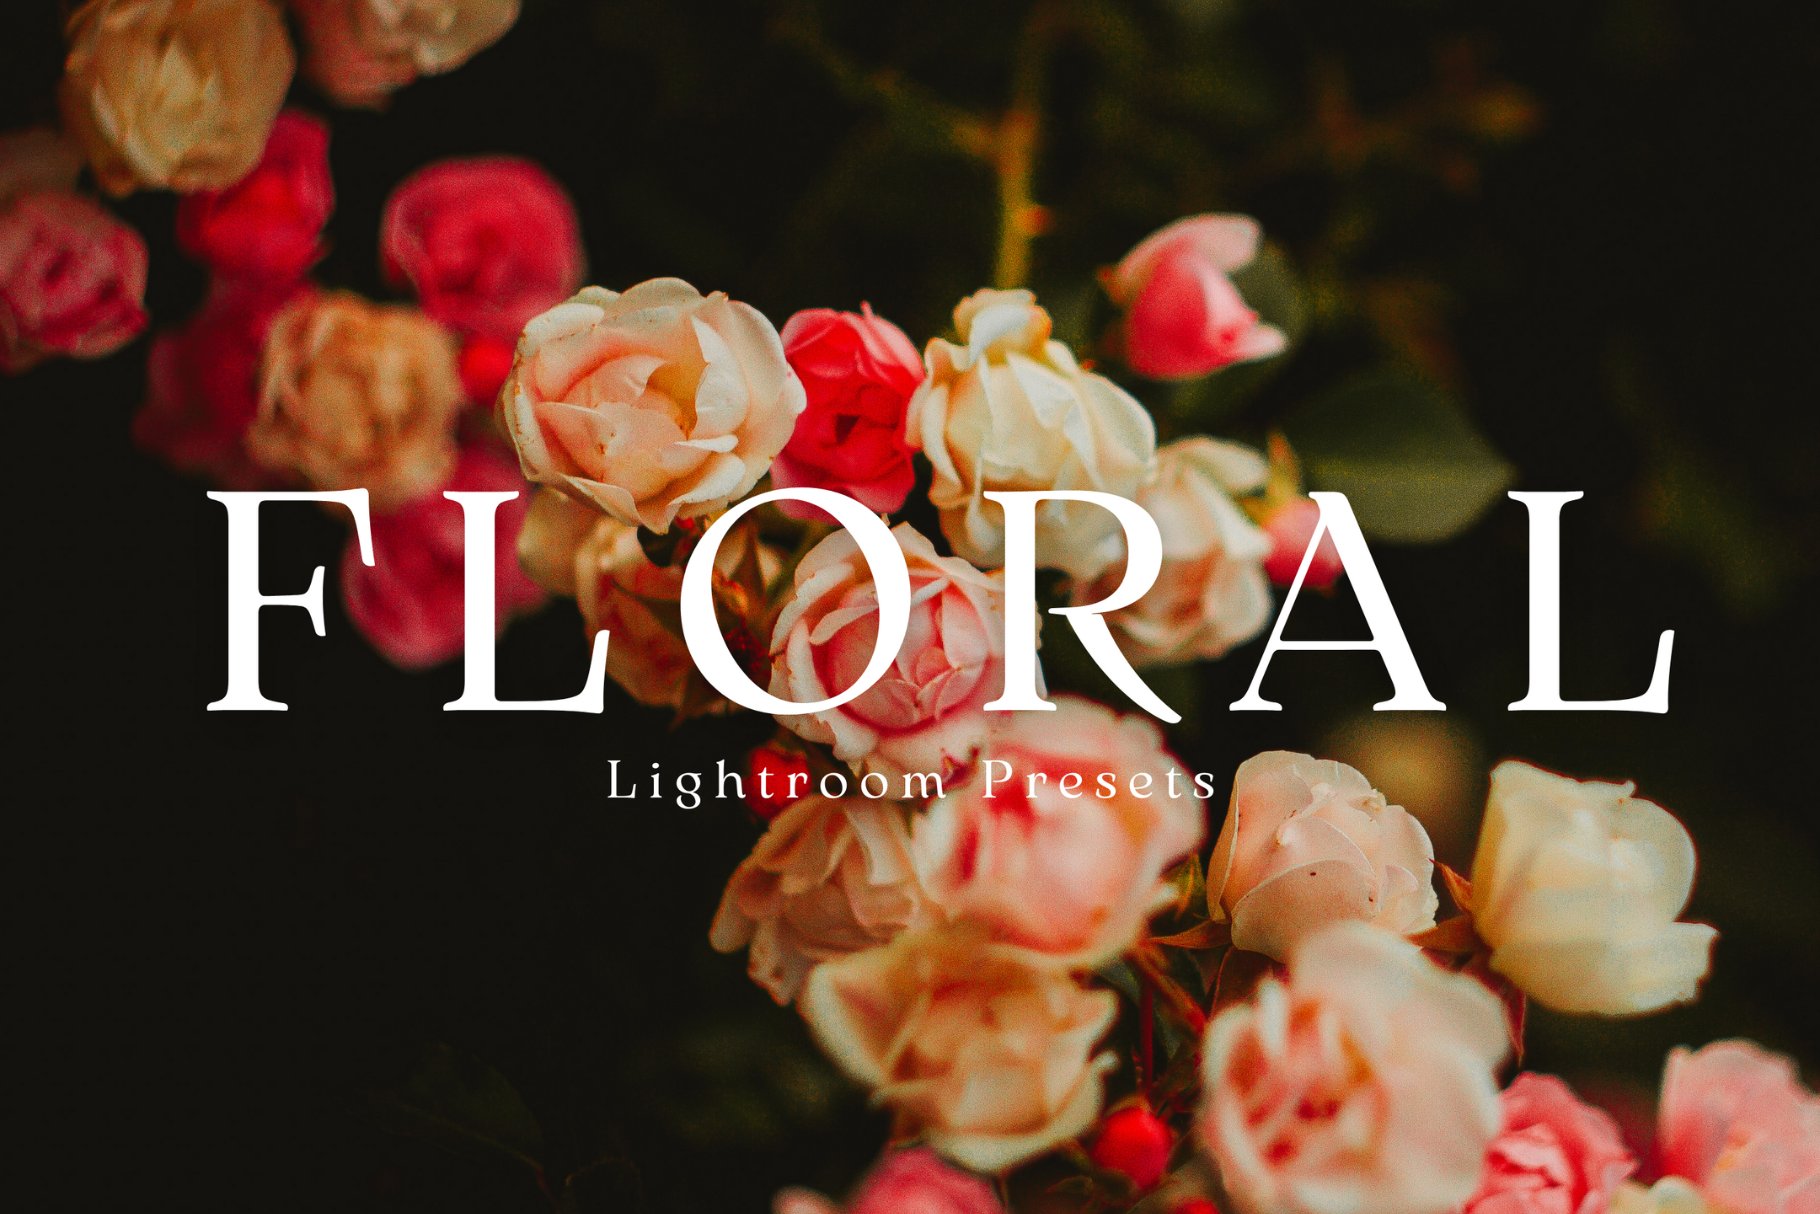 Floral Lightroom Presetscover image.